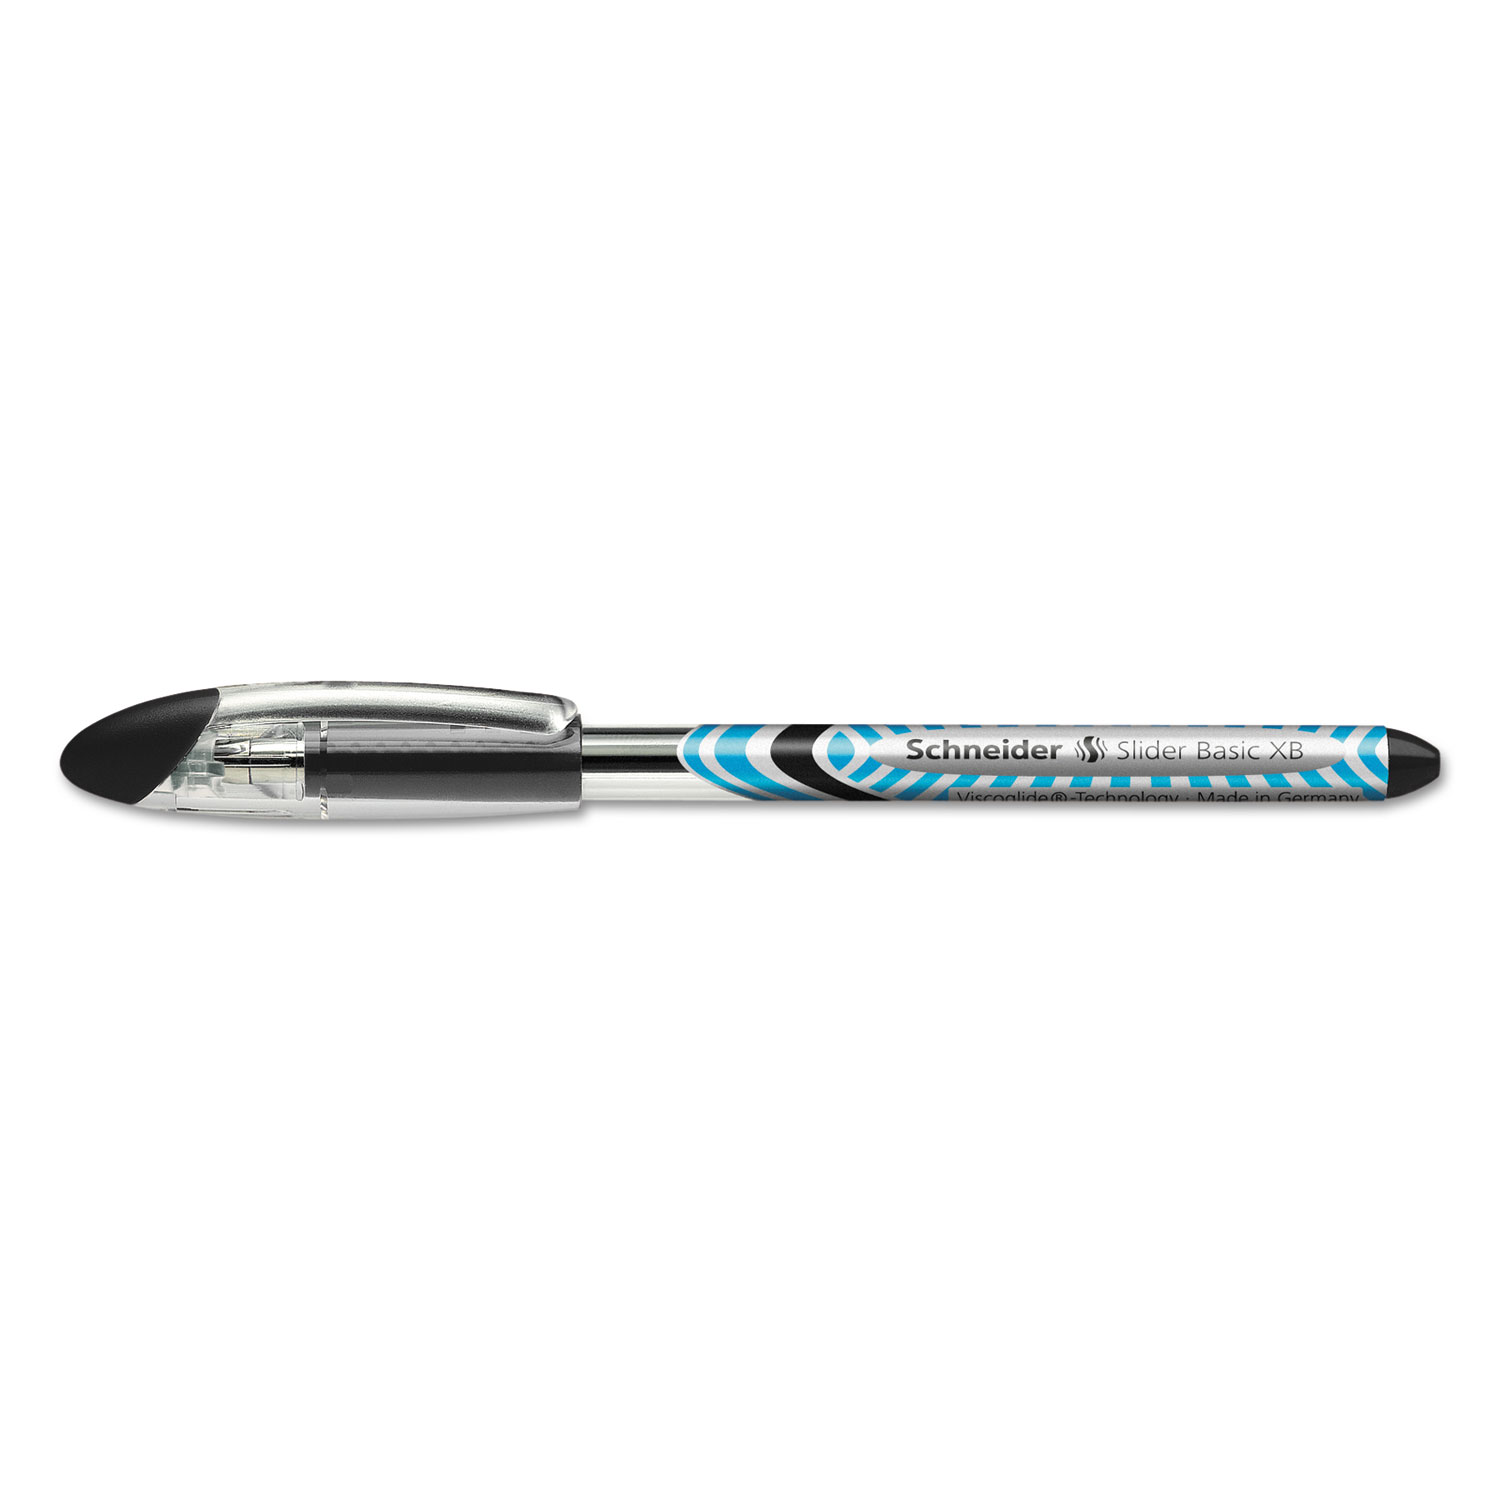  Stride 151201 Schneider Slider Stick Ballpoint Pen, 1.4mm, Black Ink, Black/Silver Barrel, 10/Box (STW151201) 